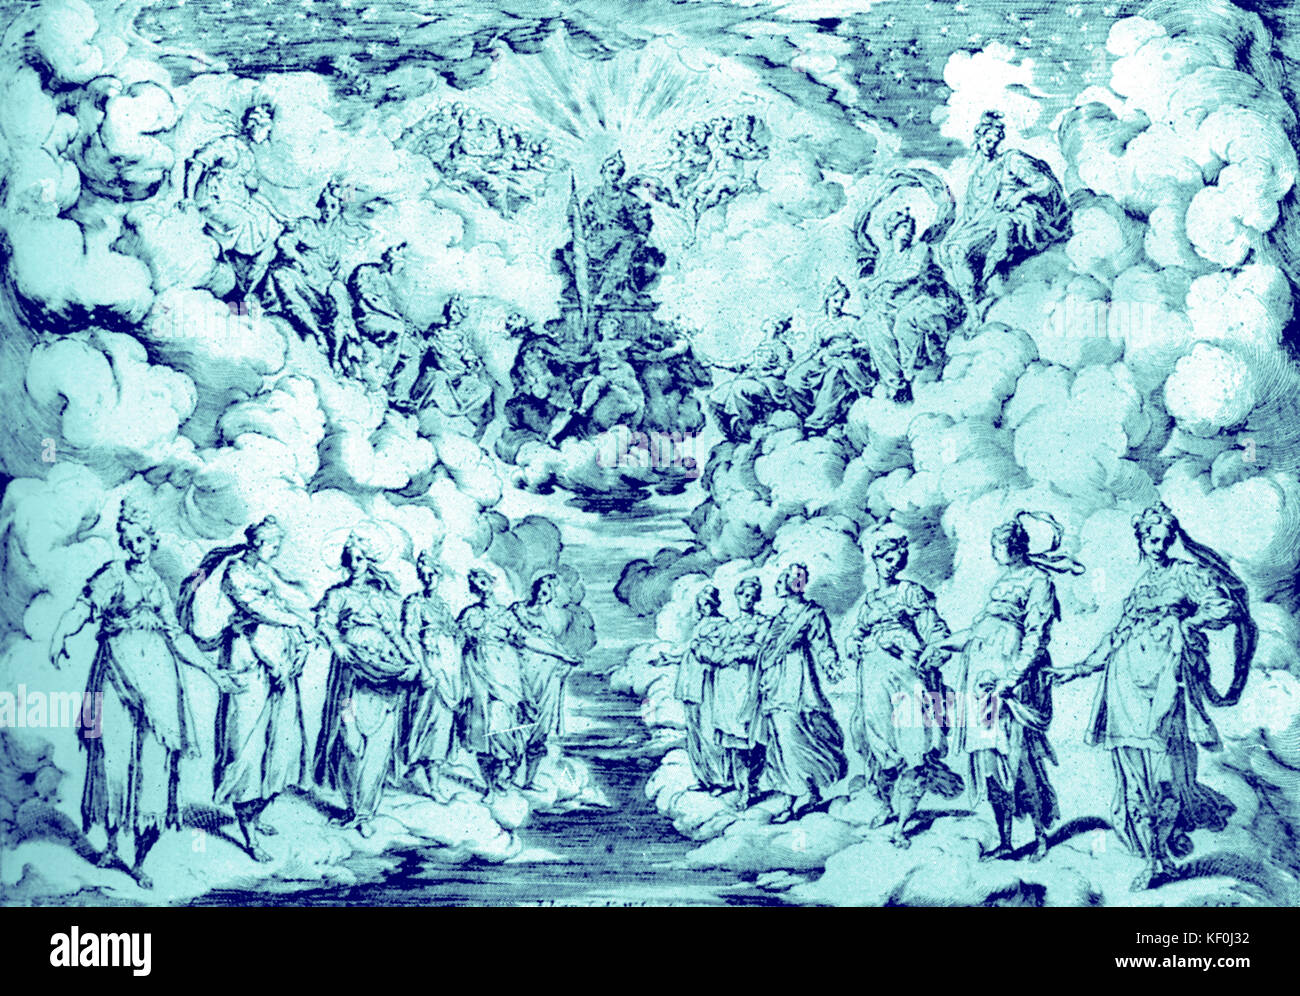 Florentiner Intermedi von 1589-L'armonia della Stere. Einstellung von Bernardo Buontalenti konzipiert für die erste Intermedio vom 1589 Medici Hochzeit: Harmonie herab zur Erde (intermedi versucht zu rekonstruieren, was geglaubt wurde, die Integration in die alte Welt der Musik, Schauspiel und Inszenierung zu sein). Getönte Ausführung. Stockfoto